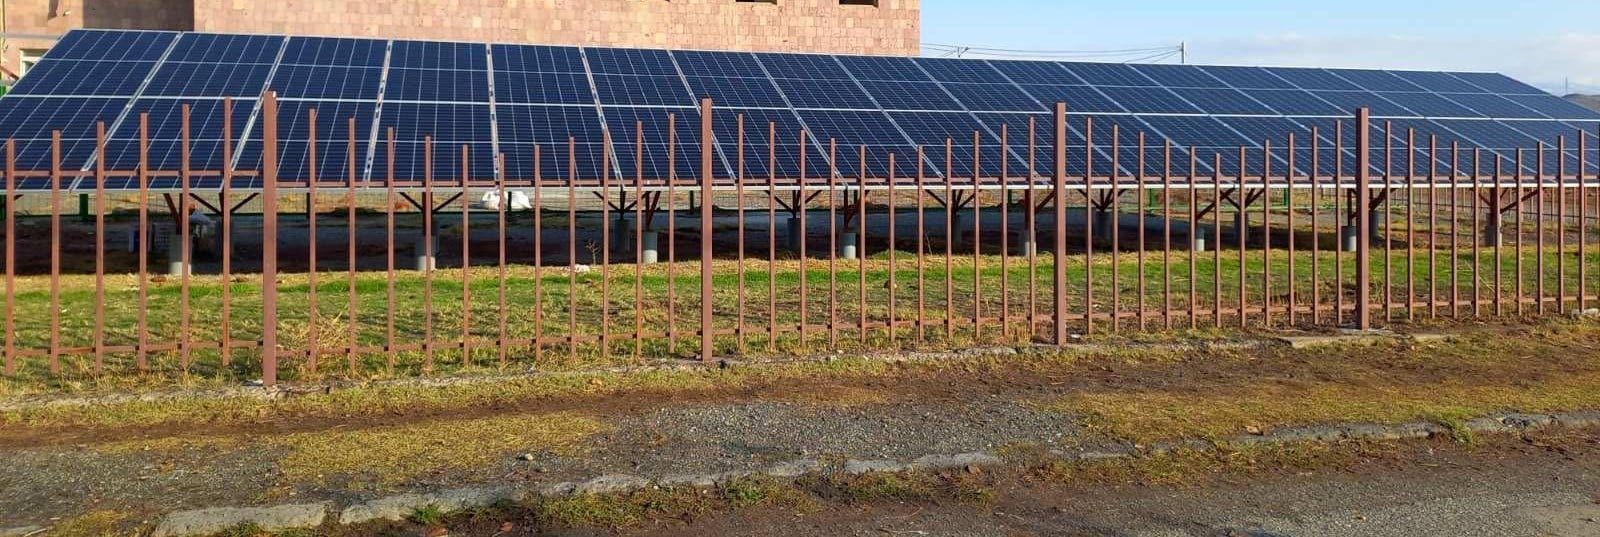 Աշտարակ համայնքի Նոր-Ամանոս բնակավայրի մանկապարտեզի կարիքների համար արևային ֆոտովոլտային կայան է տեղադրվել. ծրագրի համաֆինանսավորումն իրականացրել է ՀՀ կառավարությունը